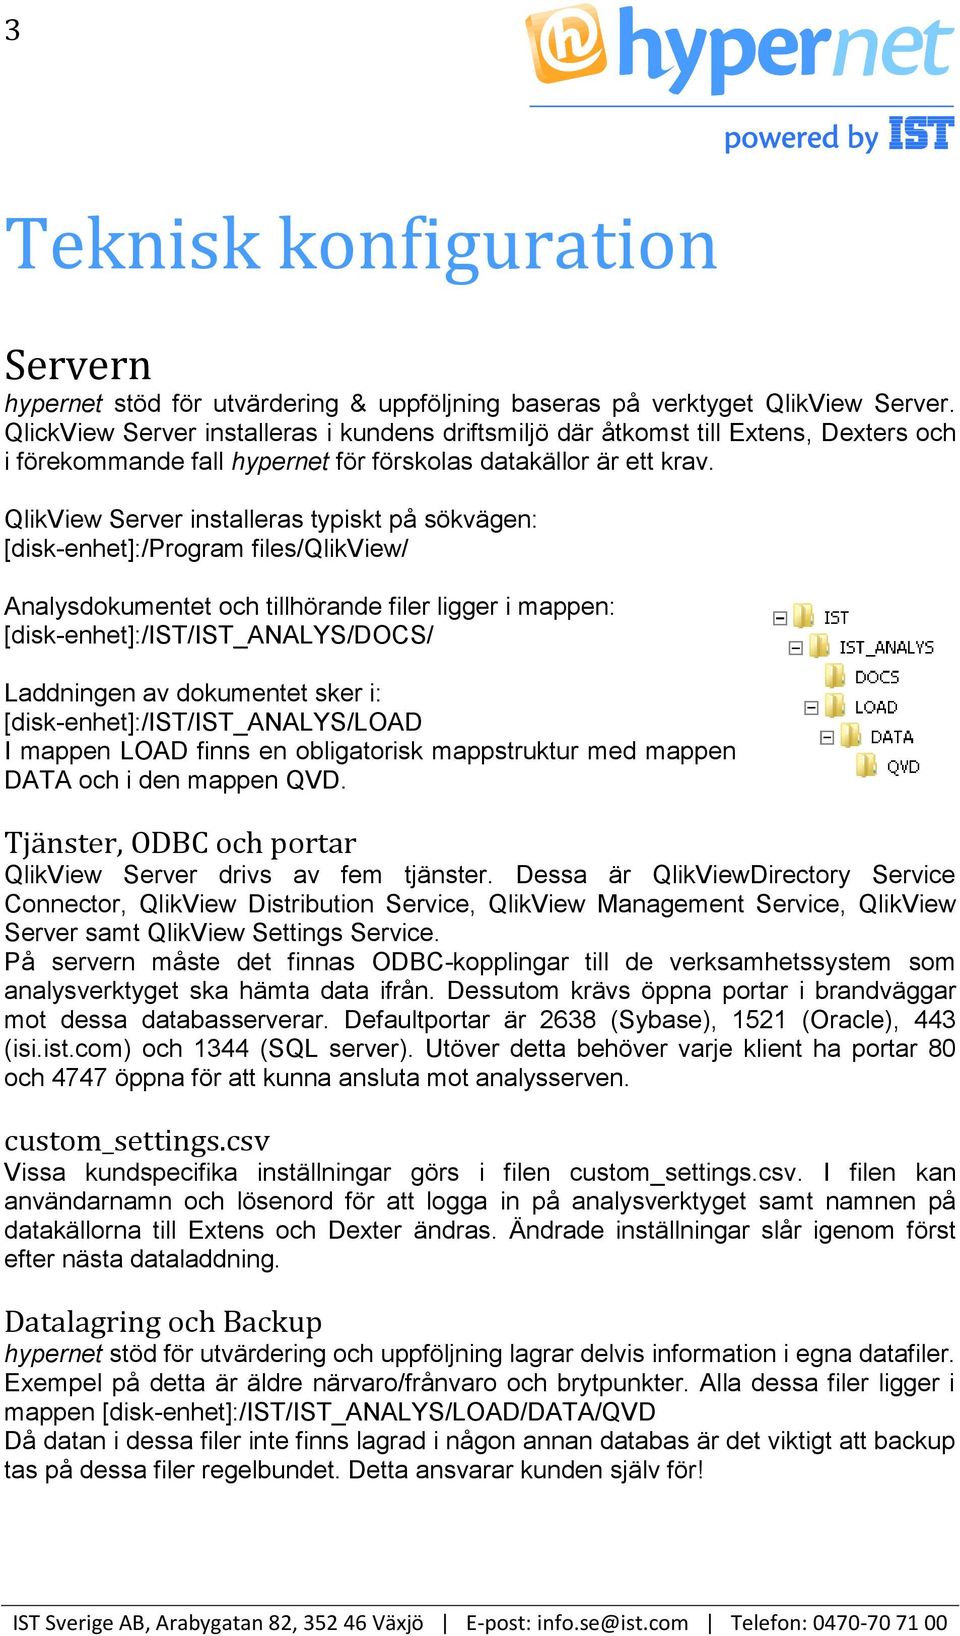 QlikView Server installeras typiskt på sökvägen: [disk-enhet]:/program files/qlikview/ Analysdokumentet och tillhörande filer ligger i mappen: [disk-enhet]:/ist/ist_analys/docs/ Laddningen av